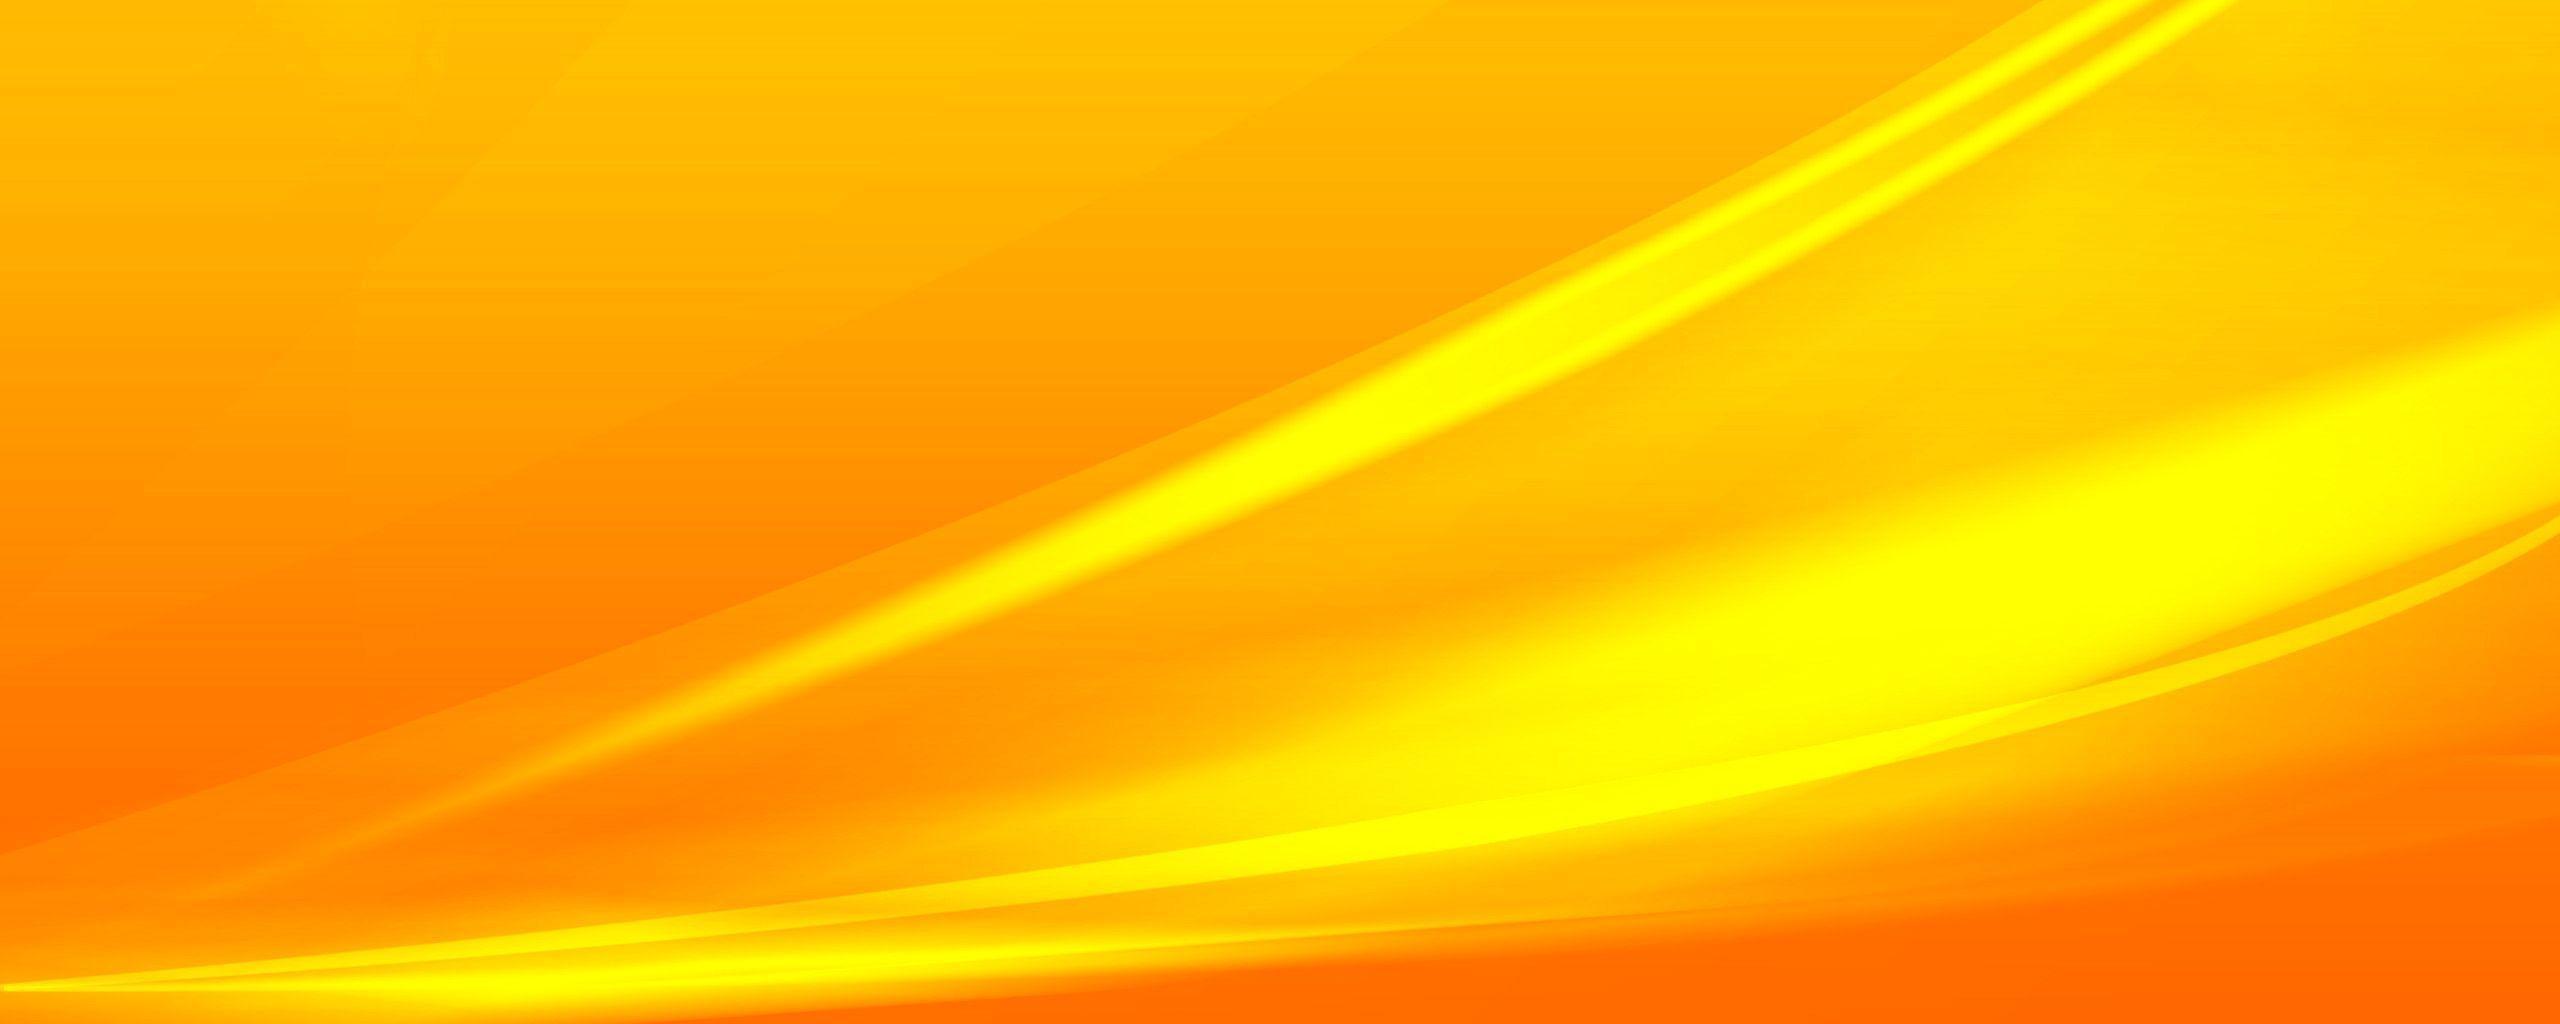 Populer 26+ Background Kuning Abstrak